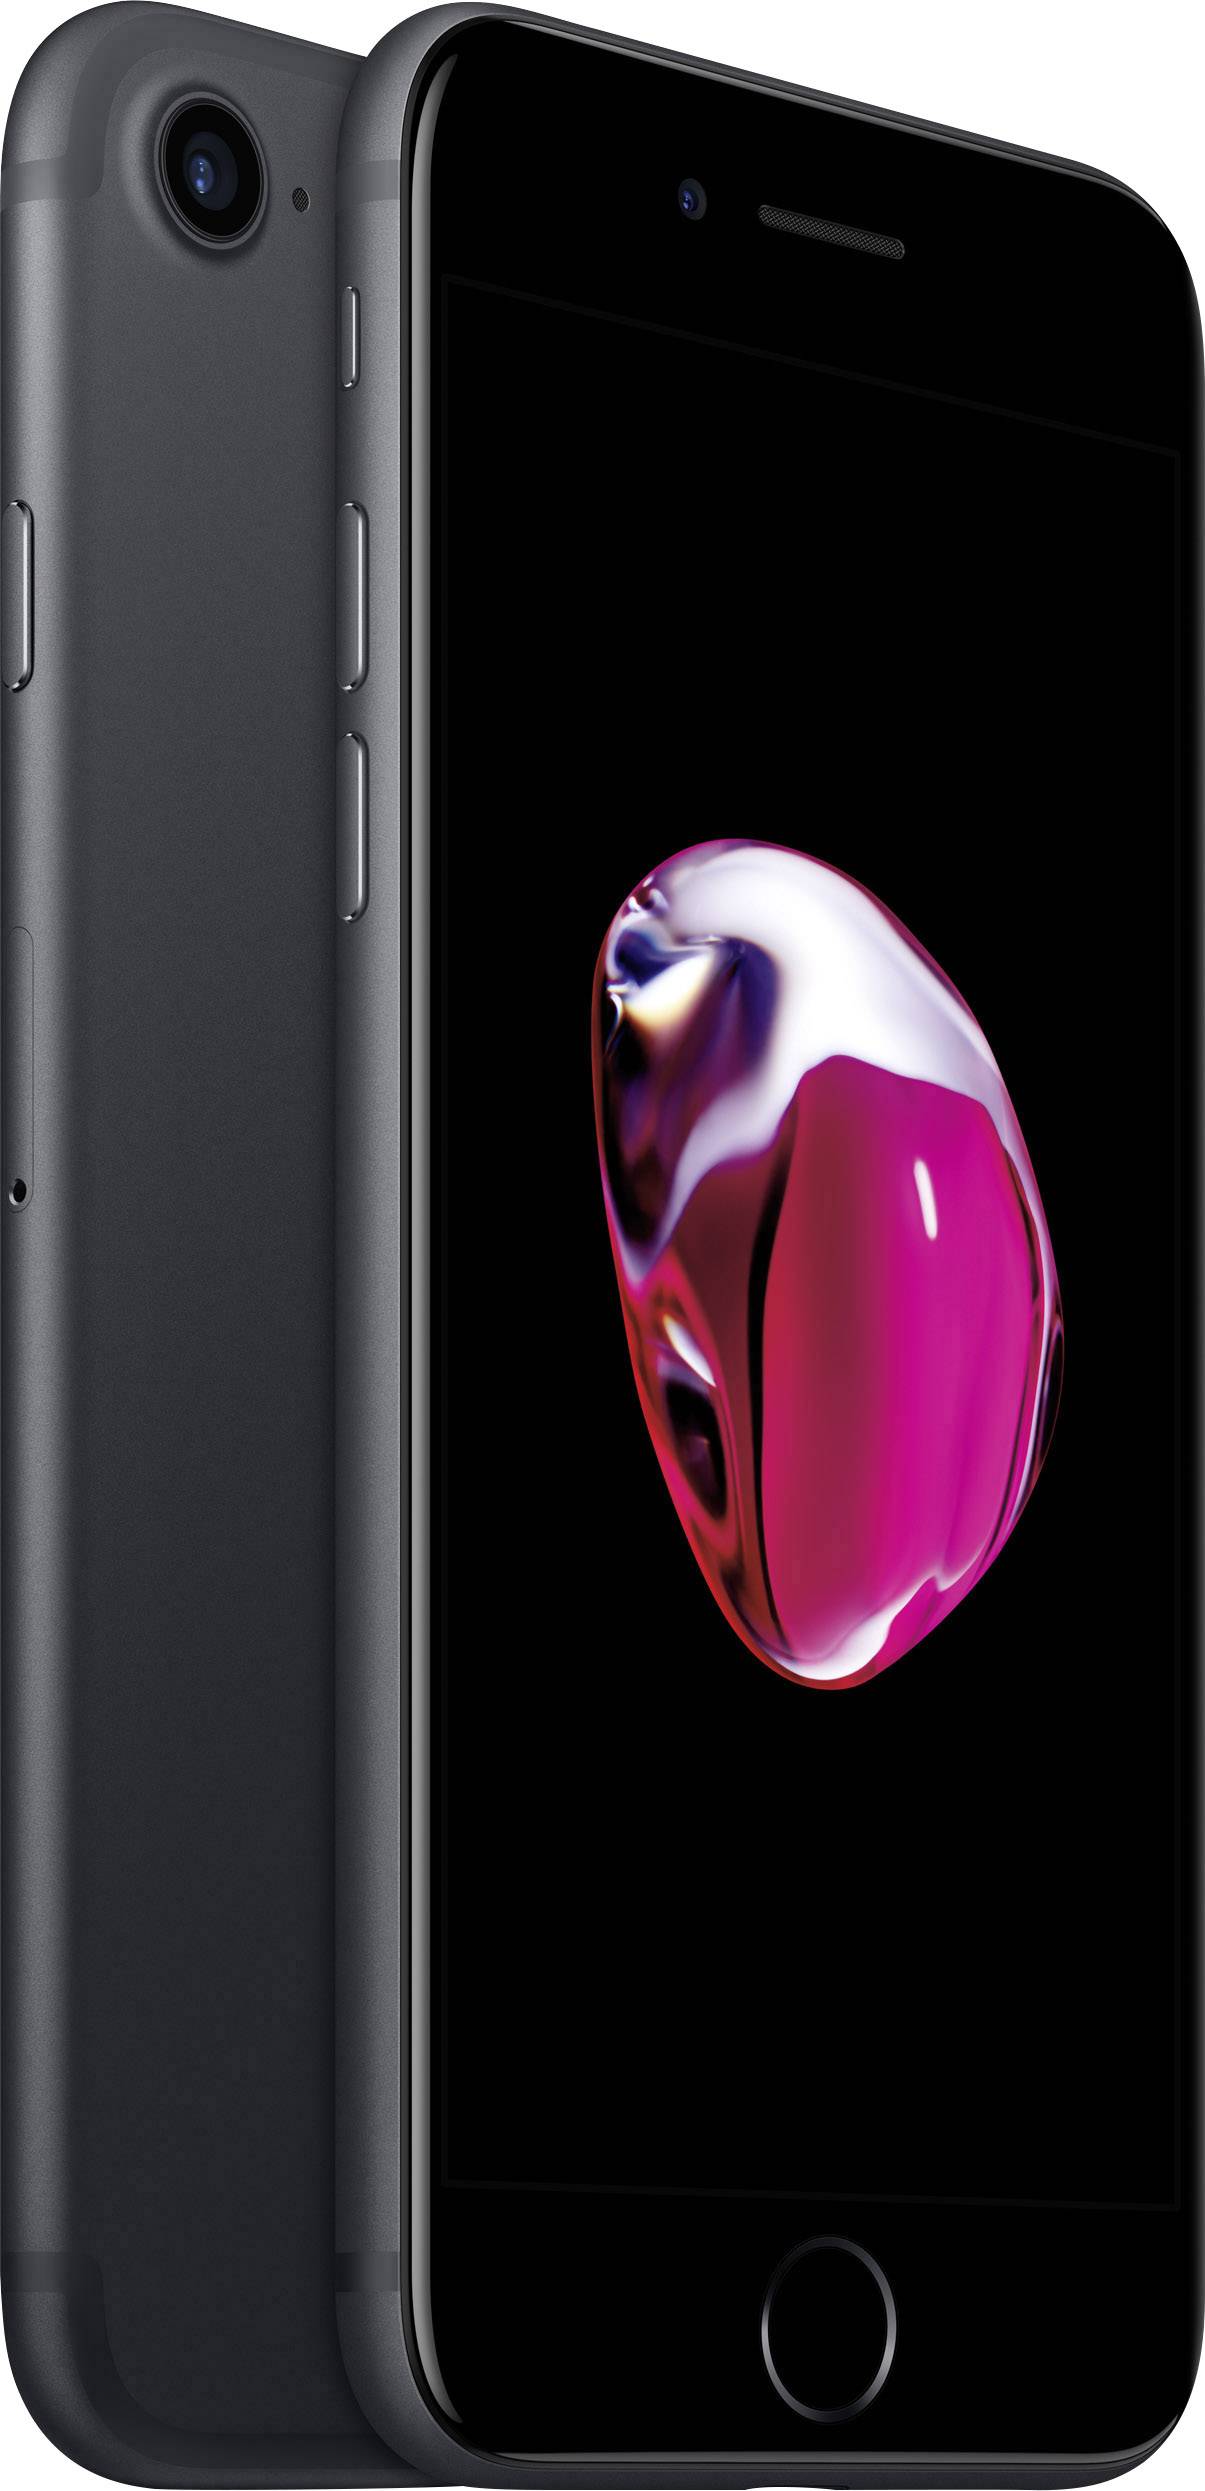 Apple iPhone 7 iPhone 128 GB 11.9 cm (4.7 inch) Black iOS 10 